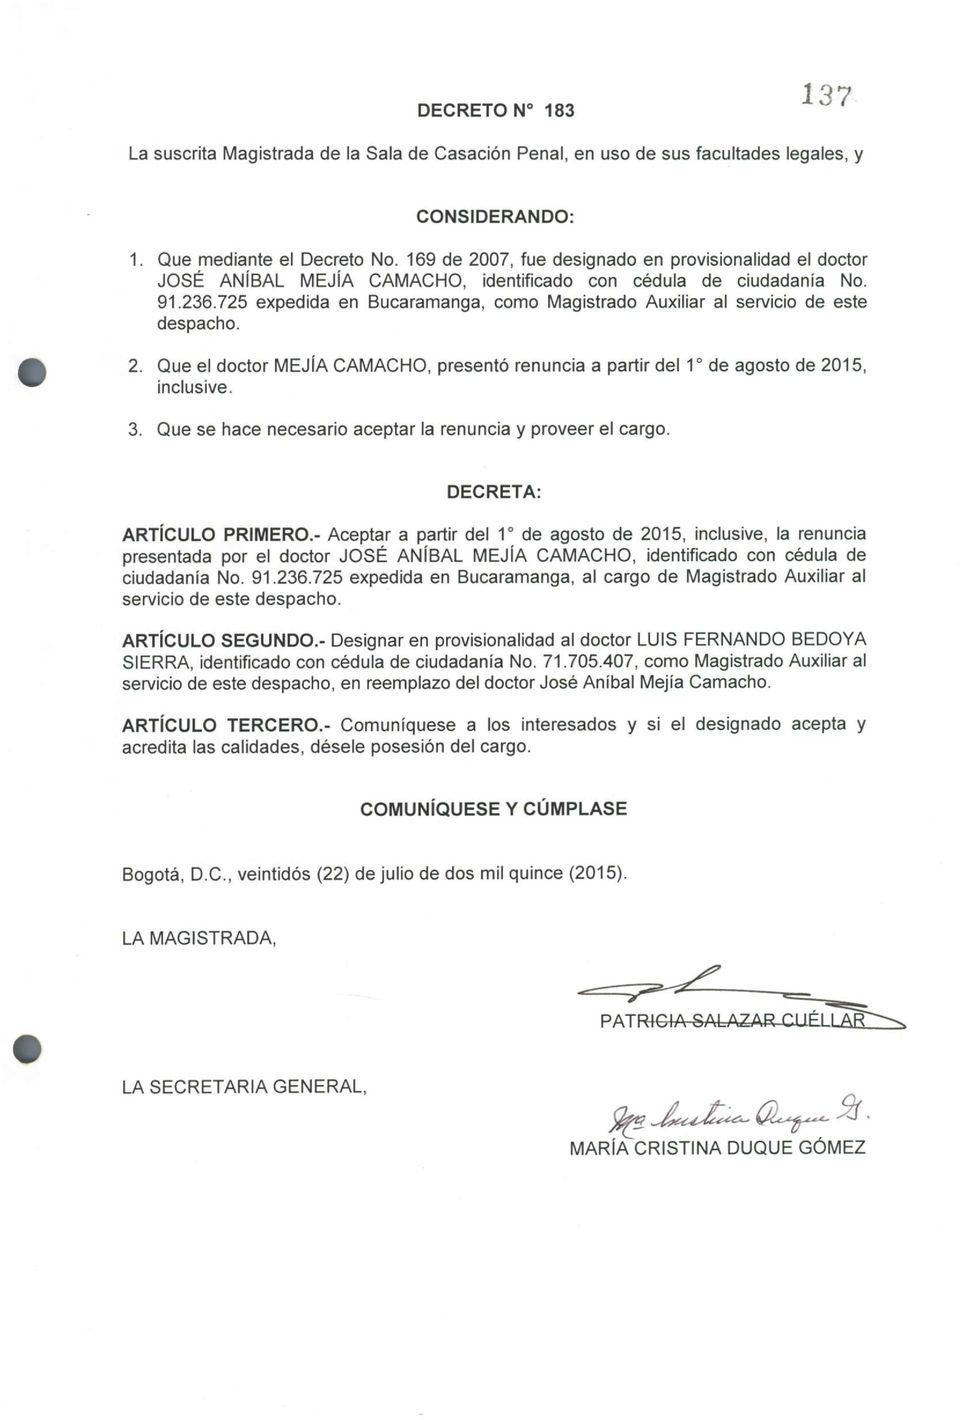 725 expedida en Bucaramanga, como Magistrado Auxiliar al servicio de este despacho. 2. Que el doctor MEJÍA CAMACHO, presentó renuncia a partir del 1 o de agosto de 2015, inclusive. 3.